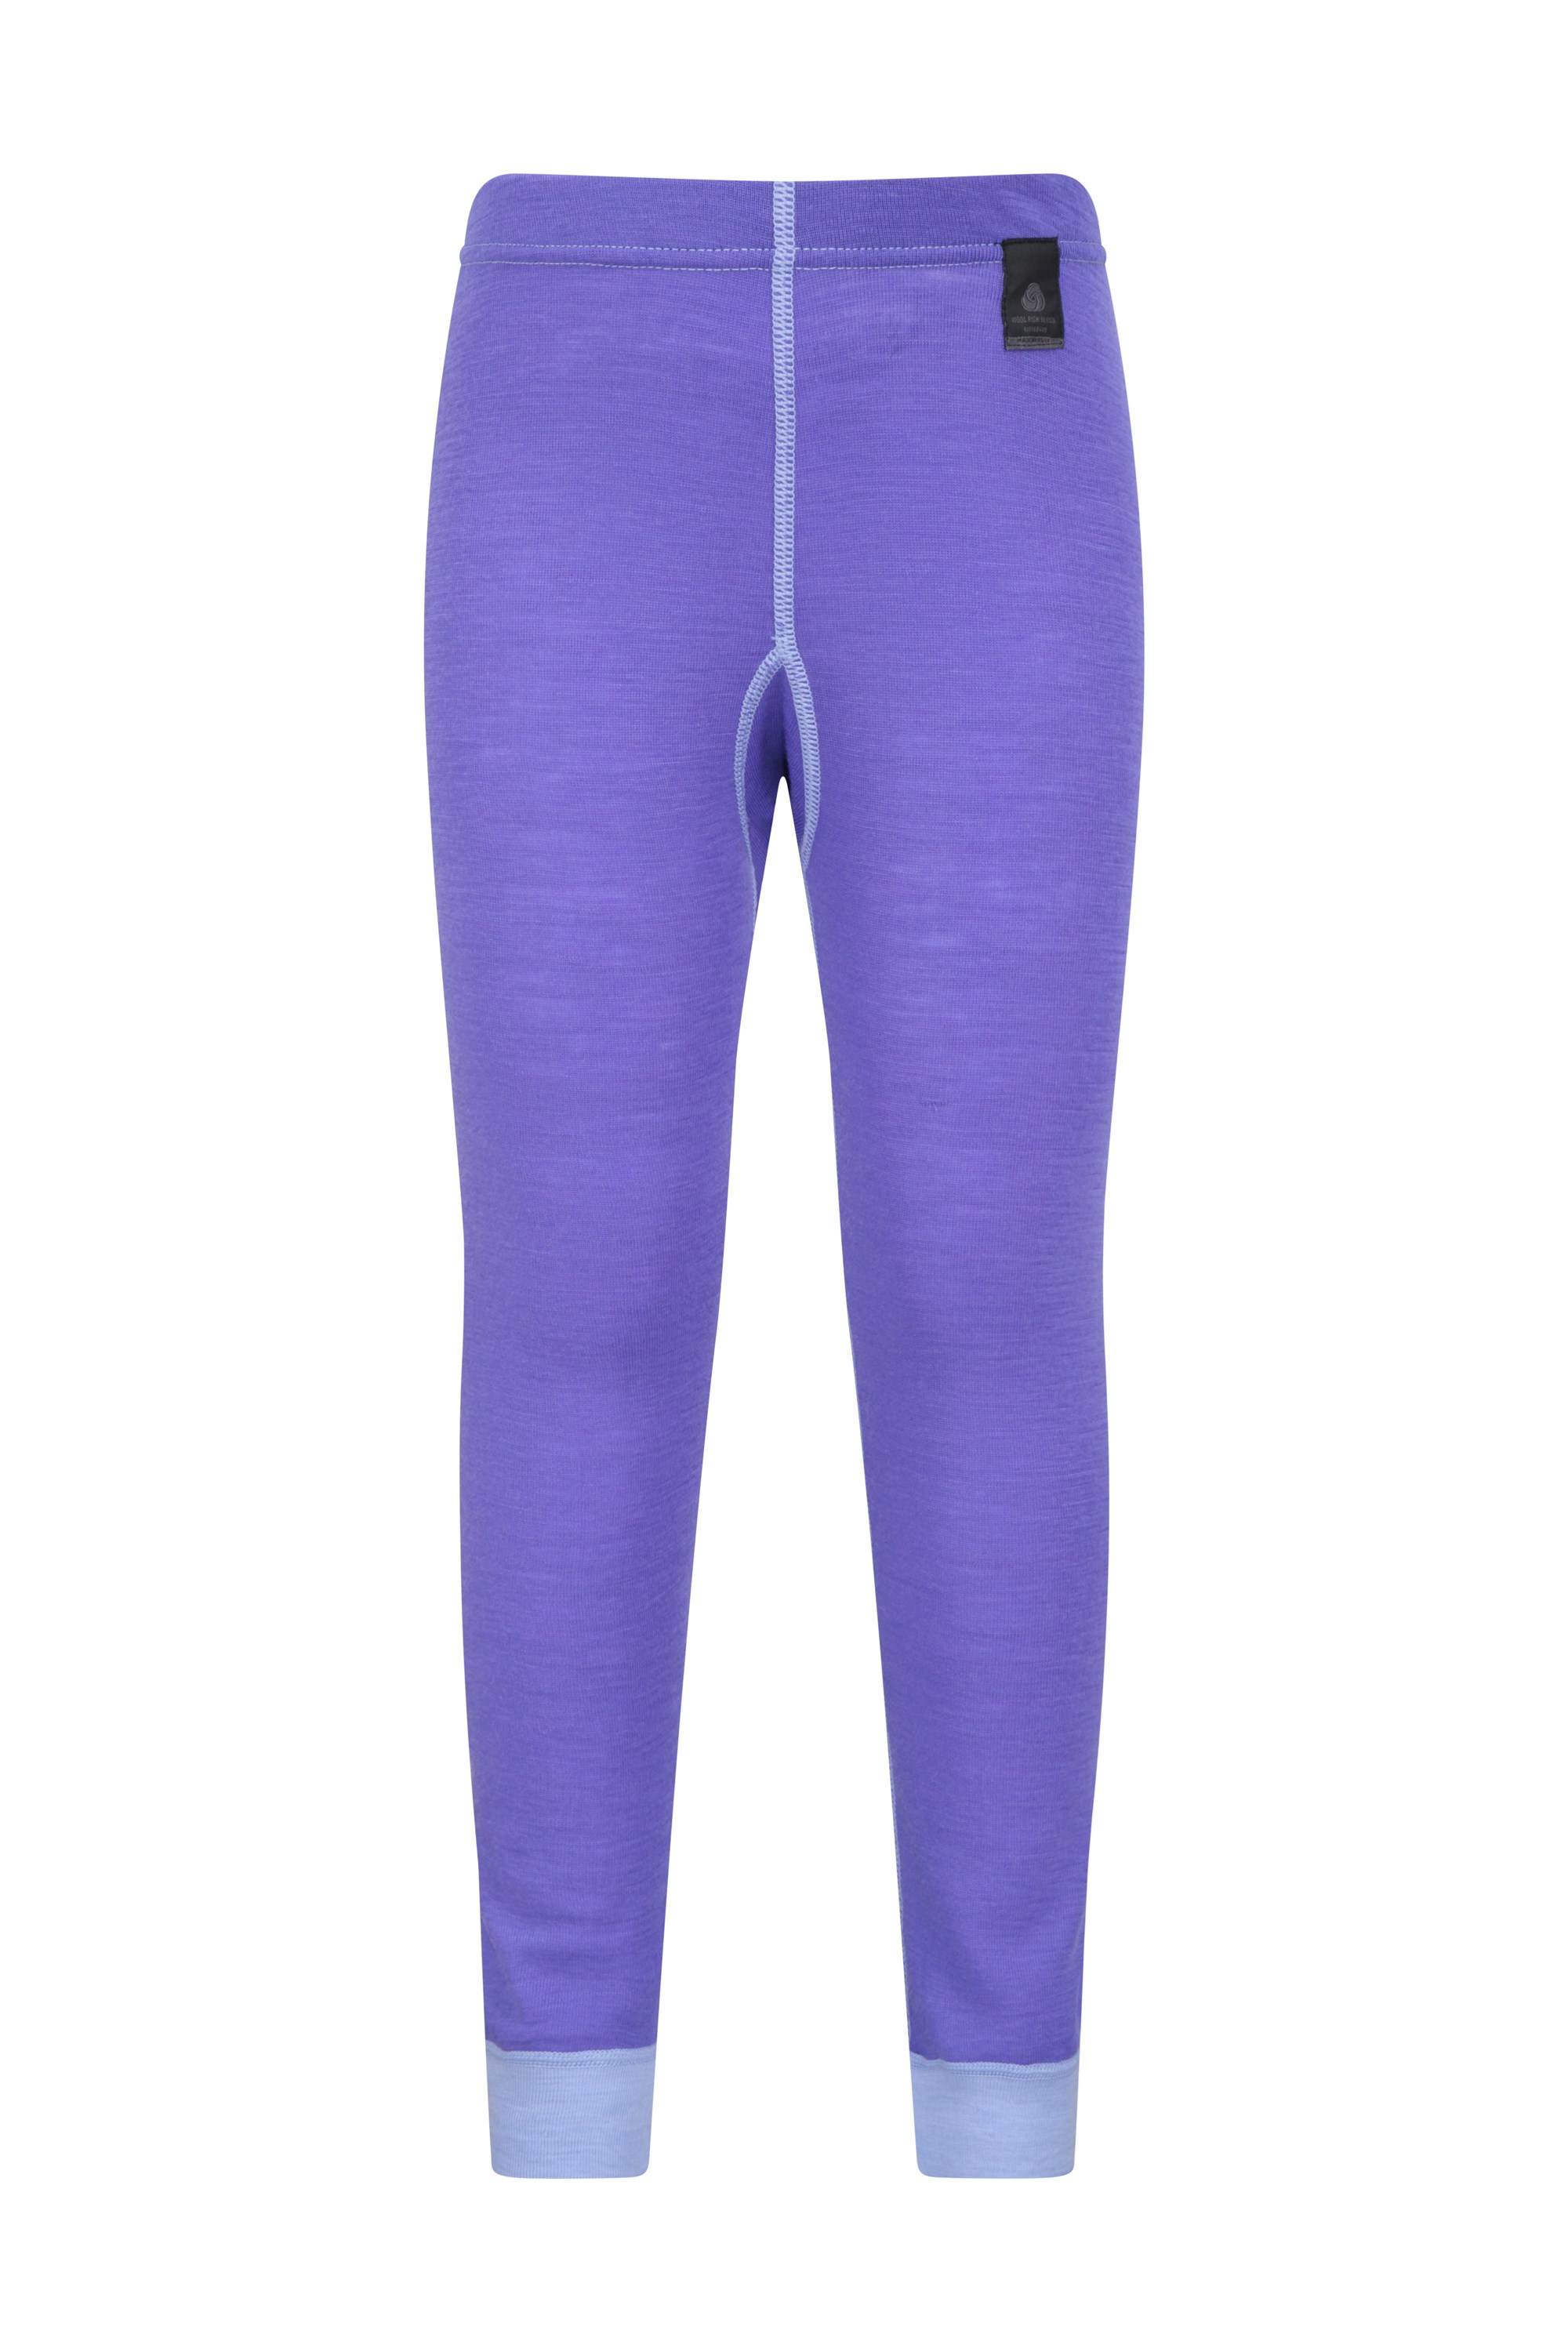 Merino Kids Base Layer Thermal Pants - Purple